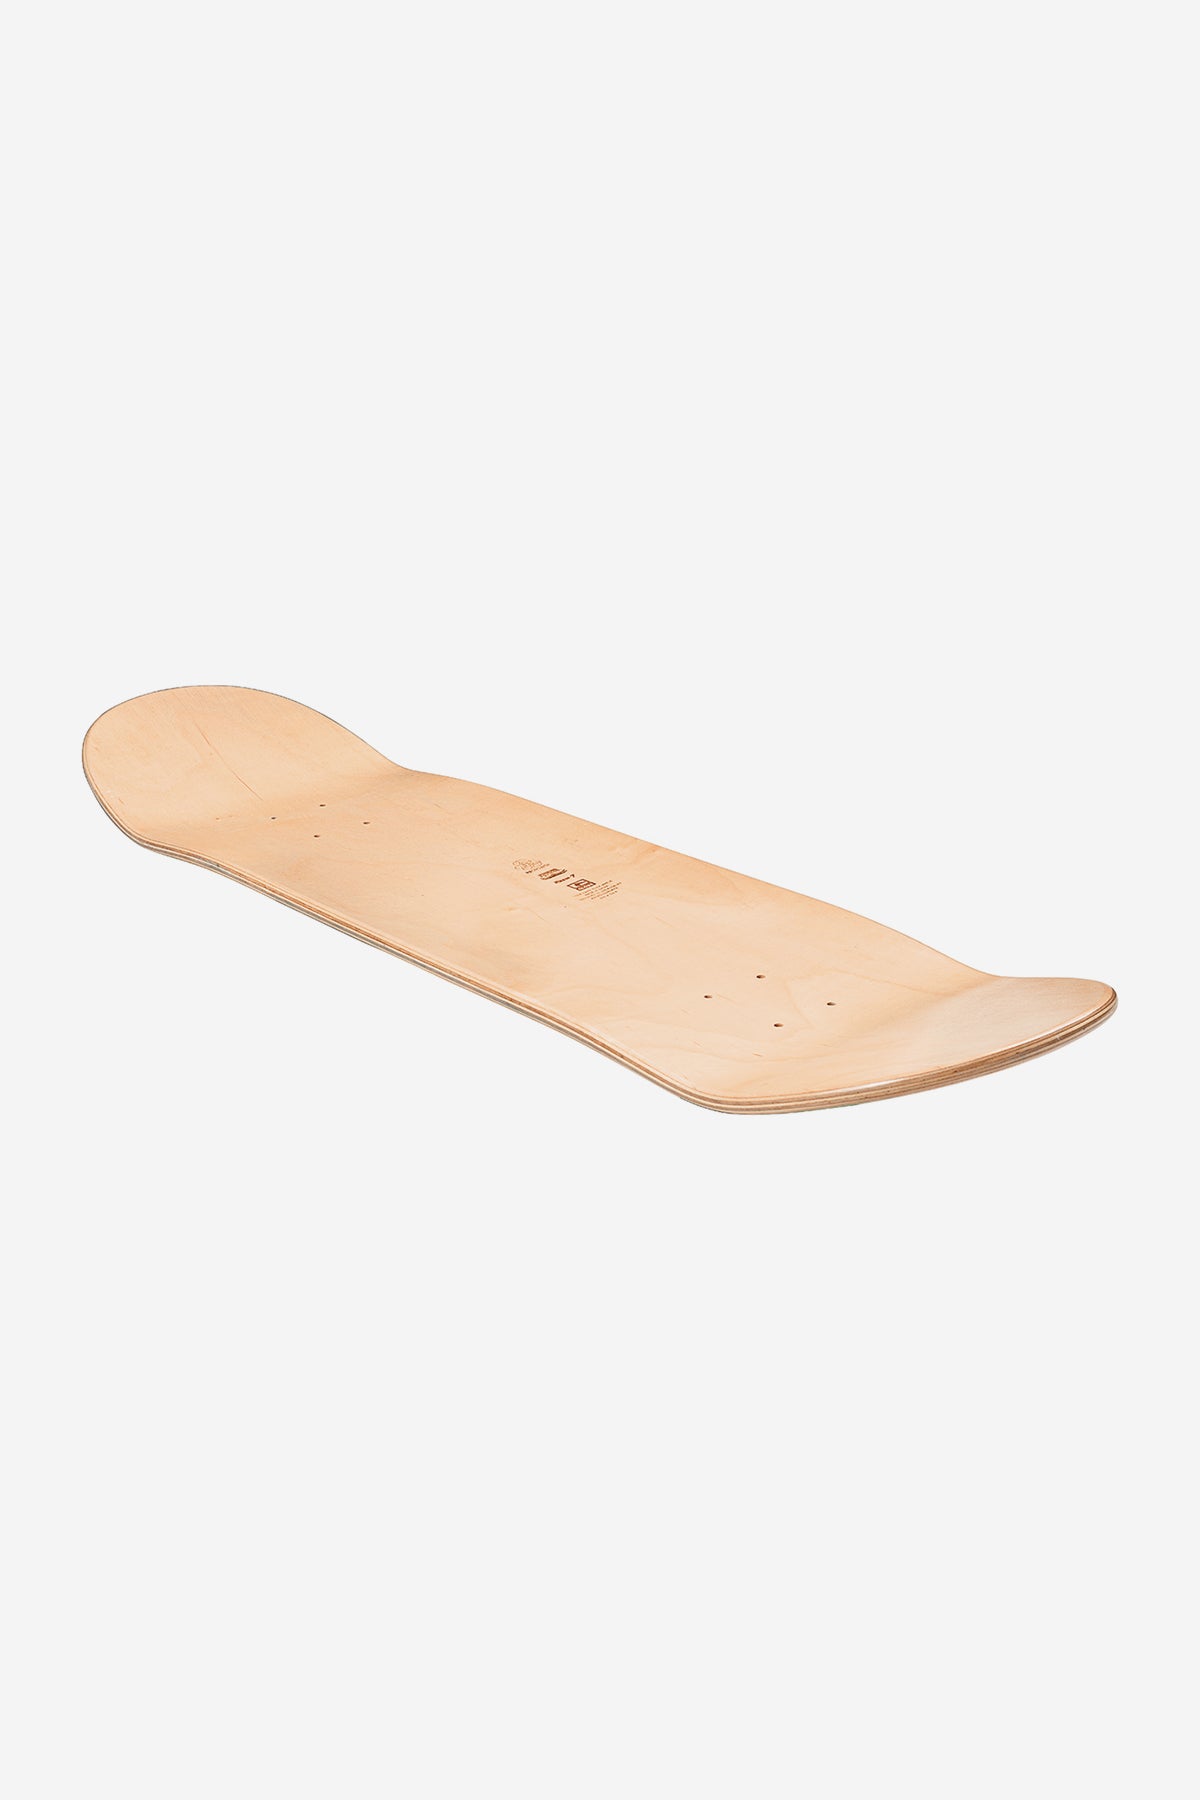 Globe - Goodstock - Uit White- 8.0" Skateboard Deck